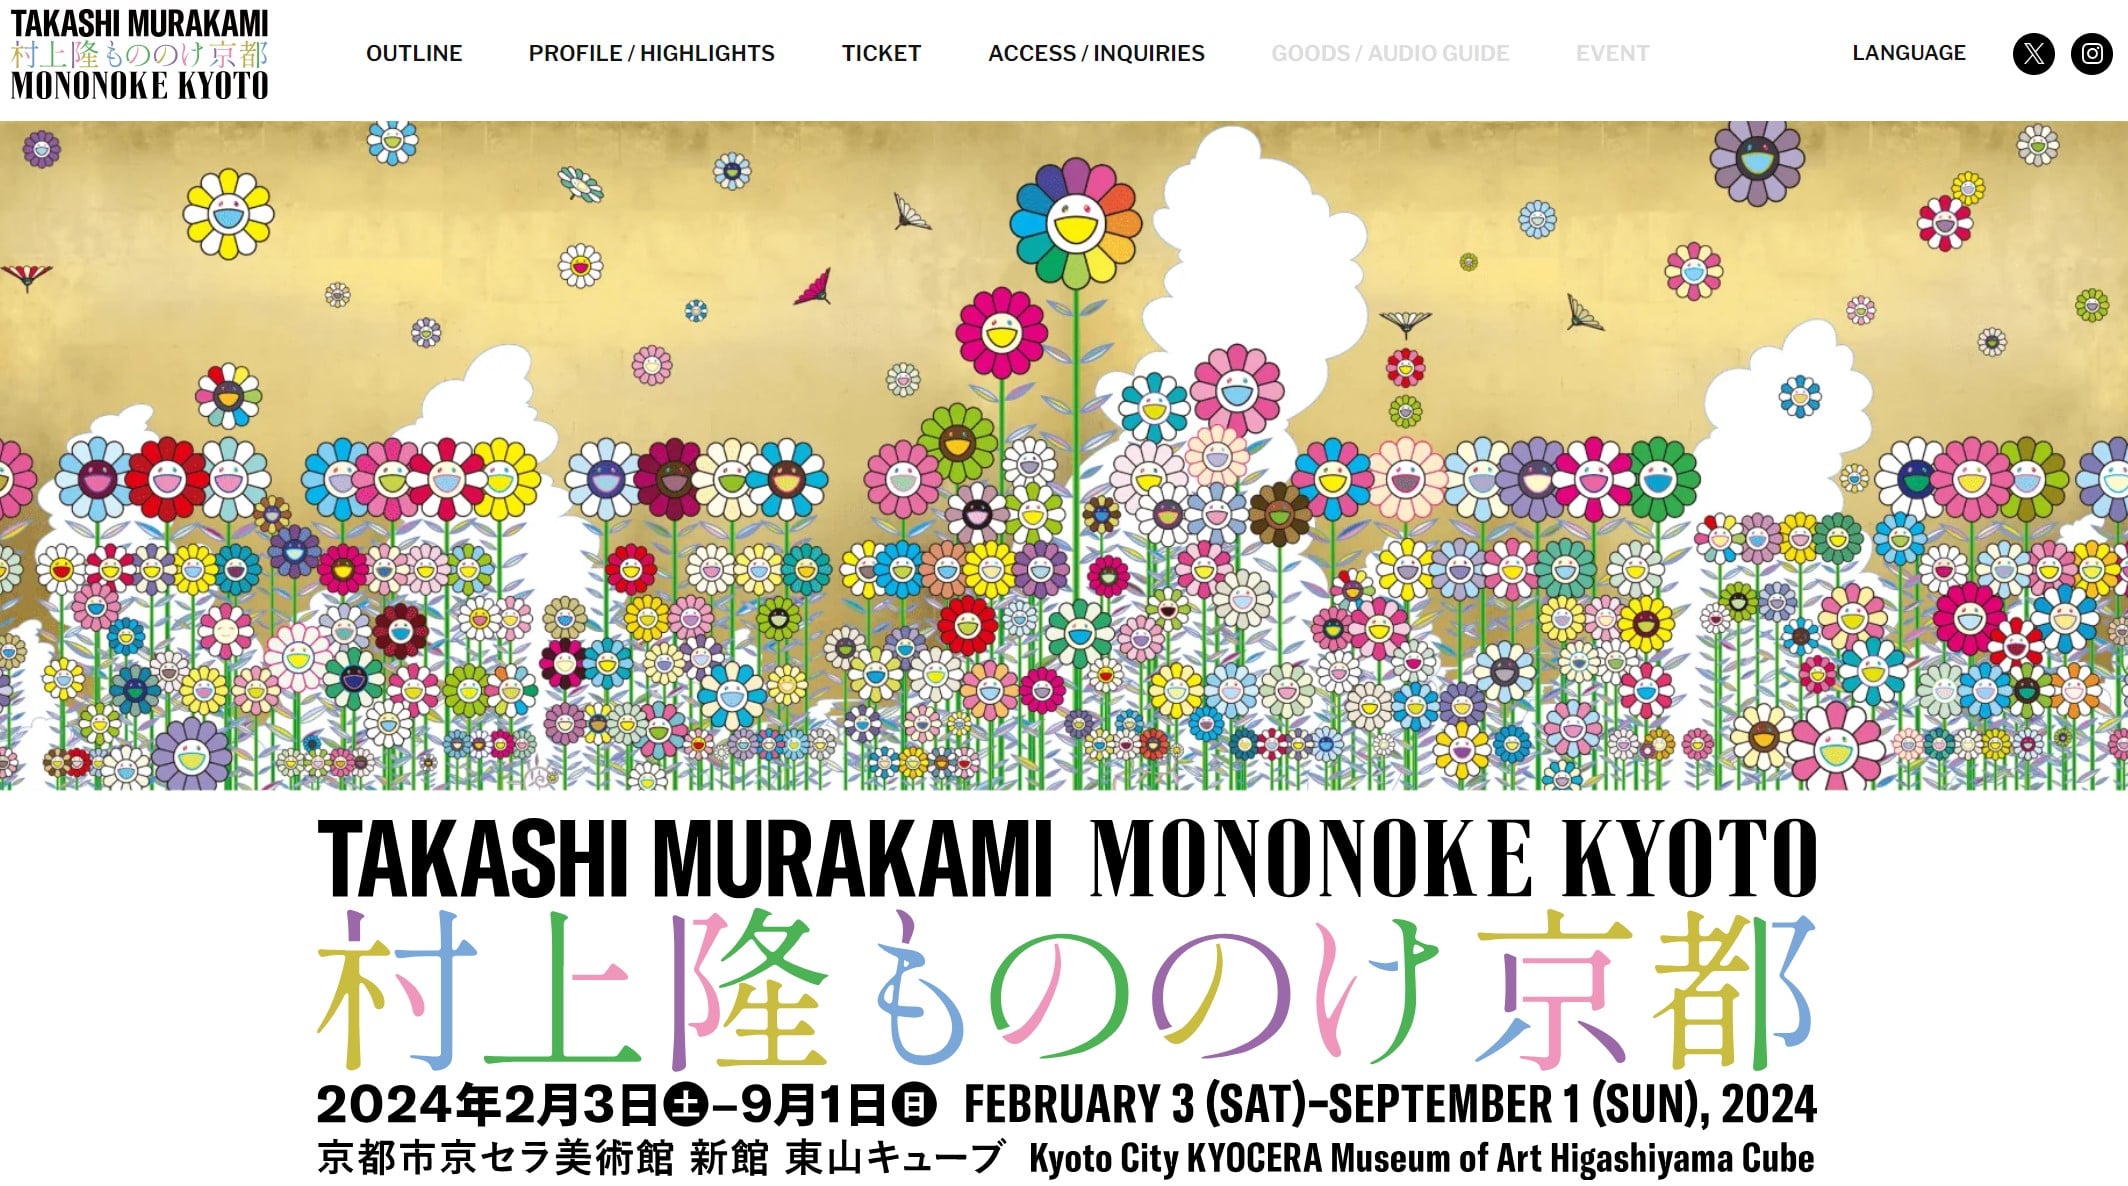 Takashi Murakami Mononoke Kyoto